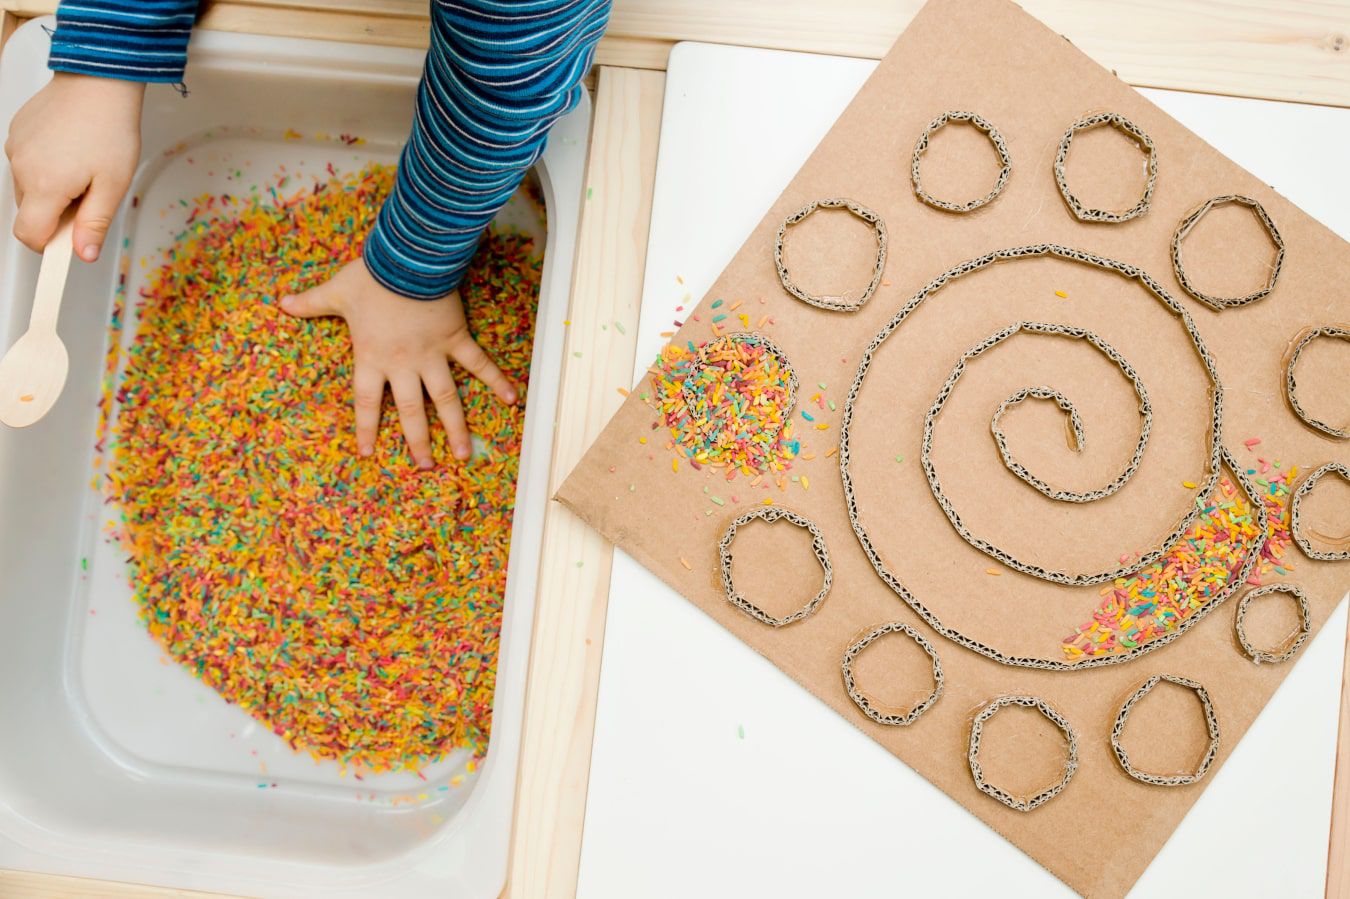 Le mani del bambino imparano a conoscere una nuova superficie – caramelle colorate e granellini di decorazioni, accanto c’è un labirinto fai da te di cartone